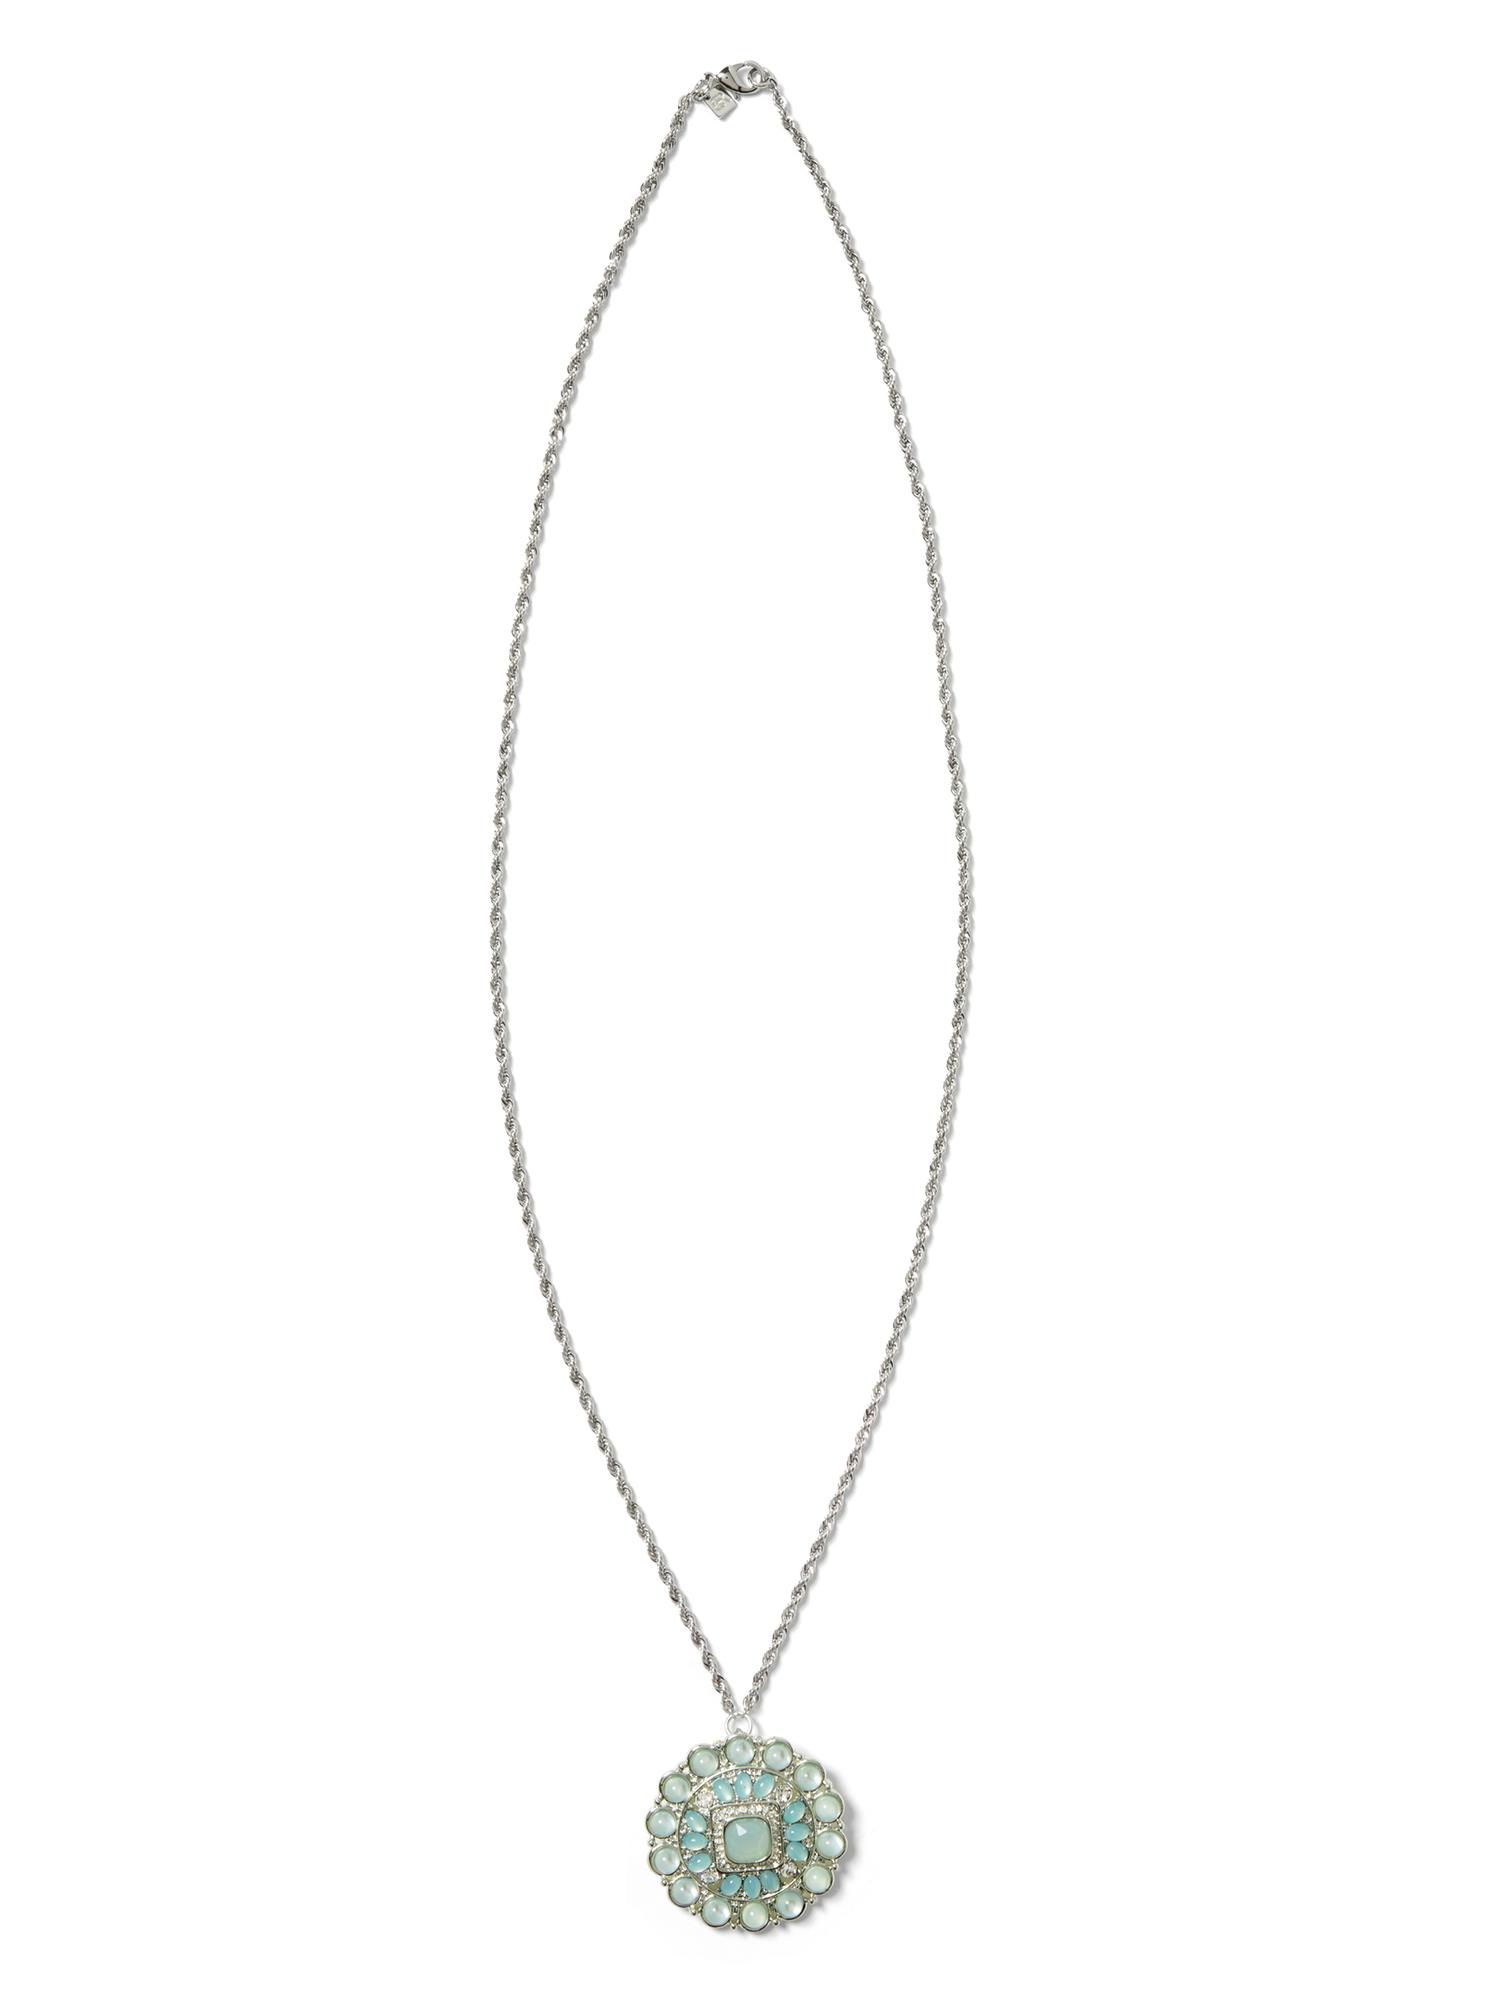 Celadon Pendant Necklace